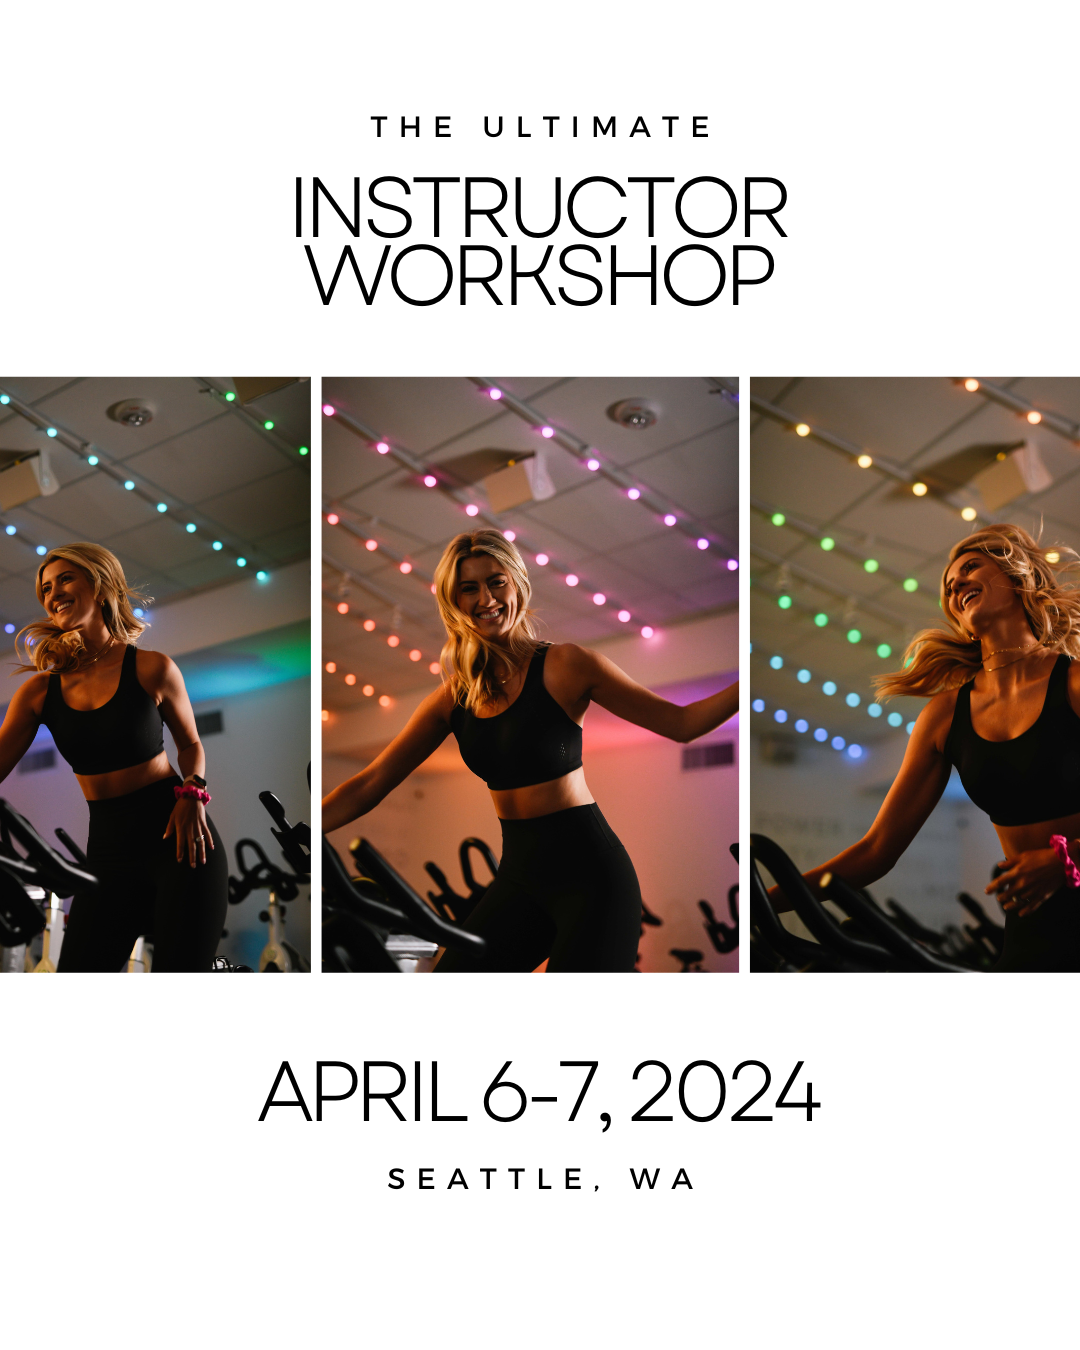 The Ultimate Instructor Workshop (April 6-7, 2024)